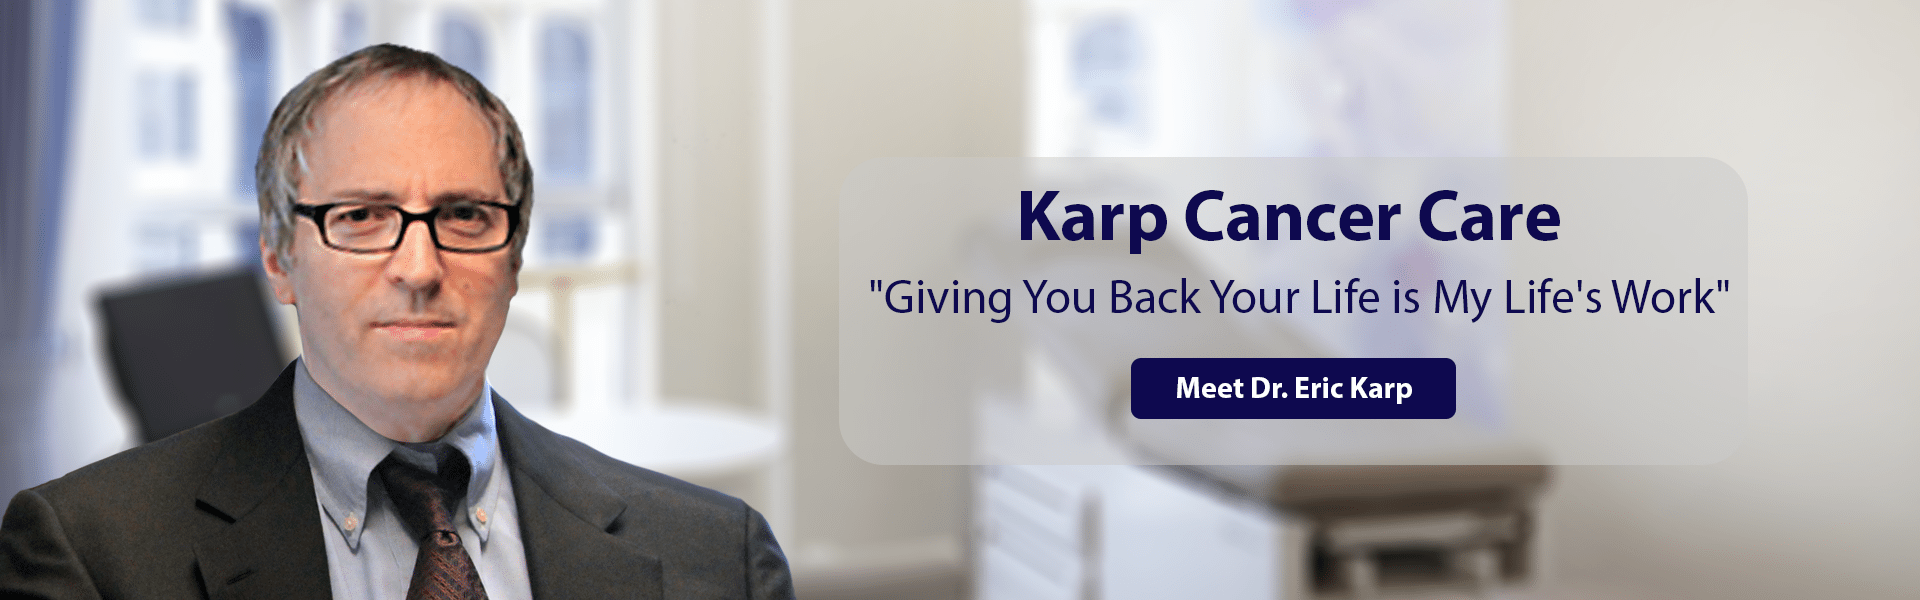 Dr. Eric Karp